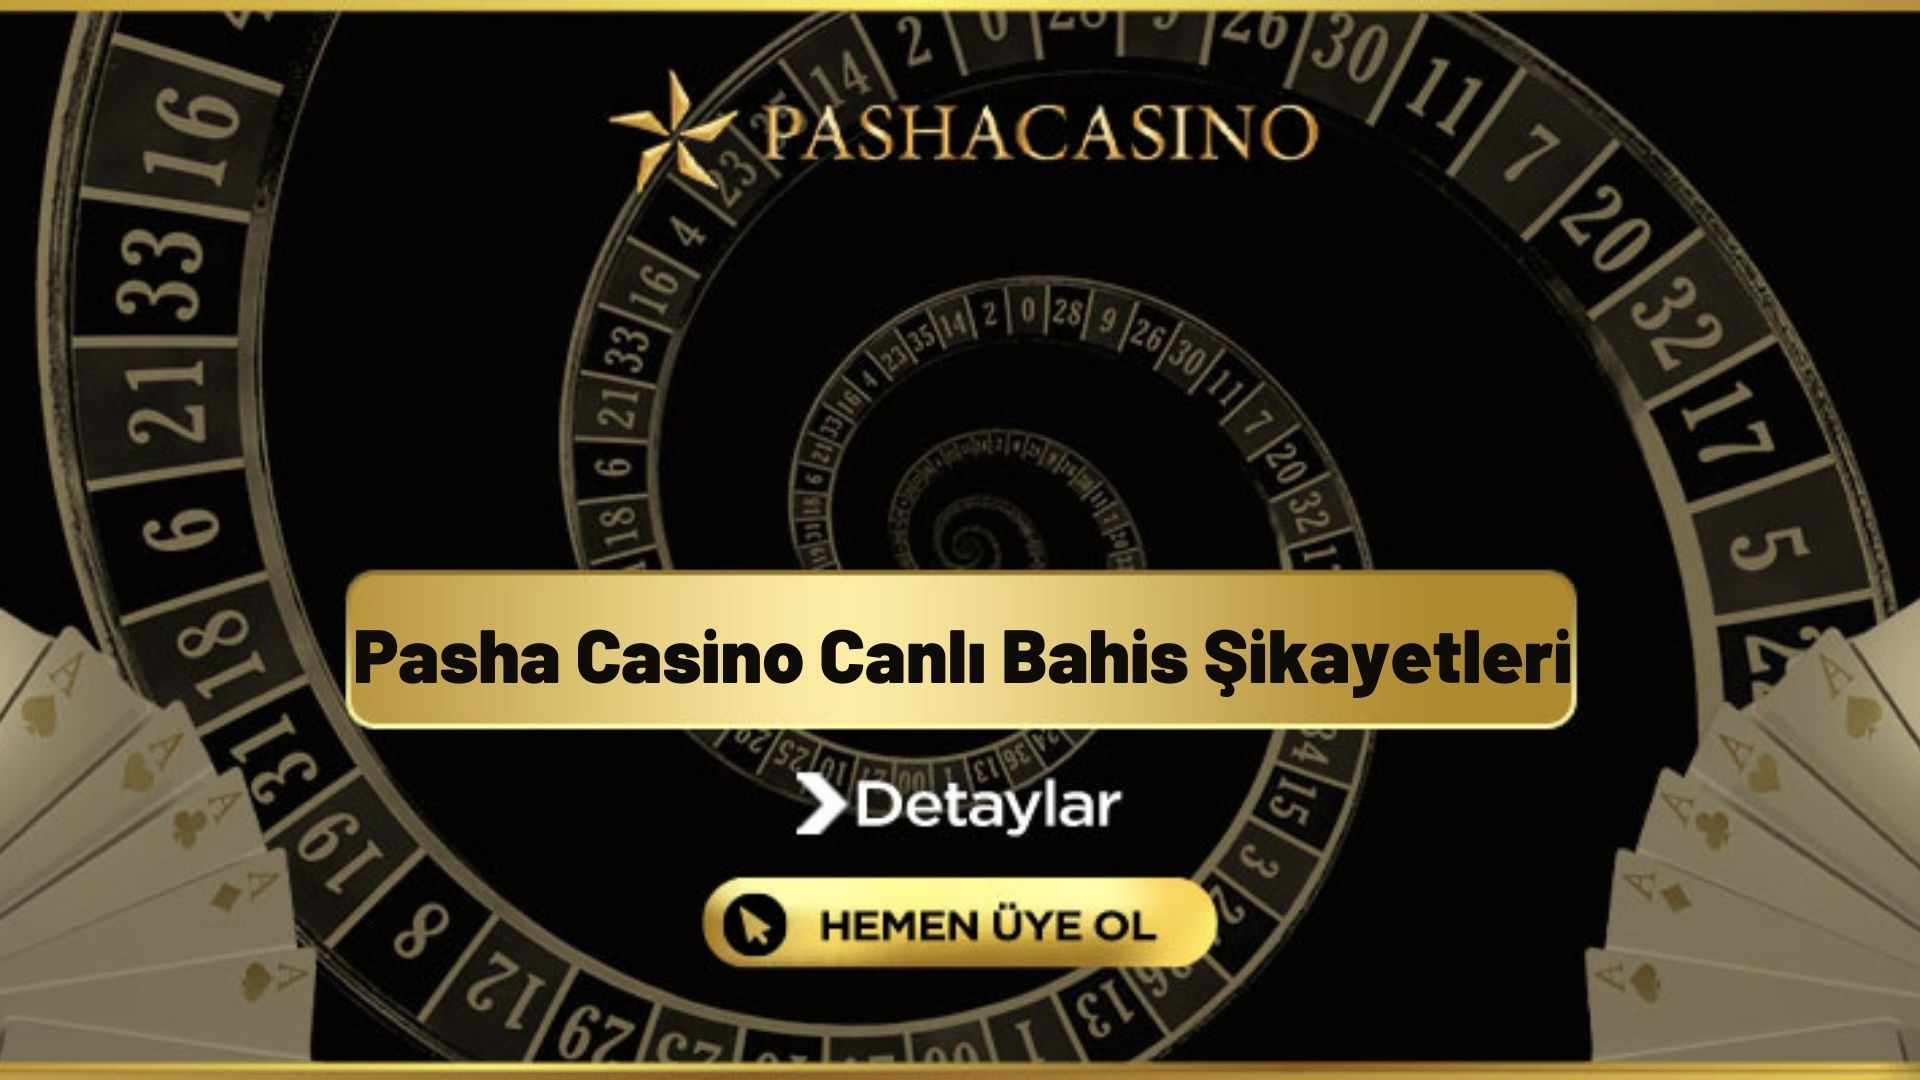 Pasha Casino Canlı Bahis Şikayetleri